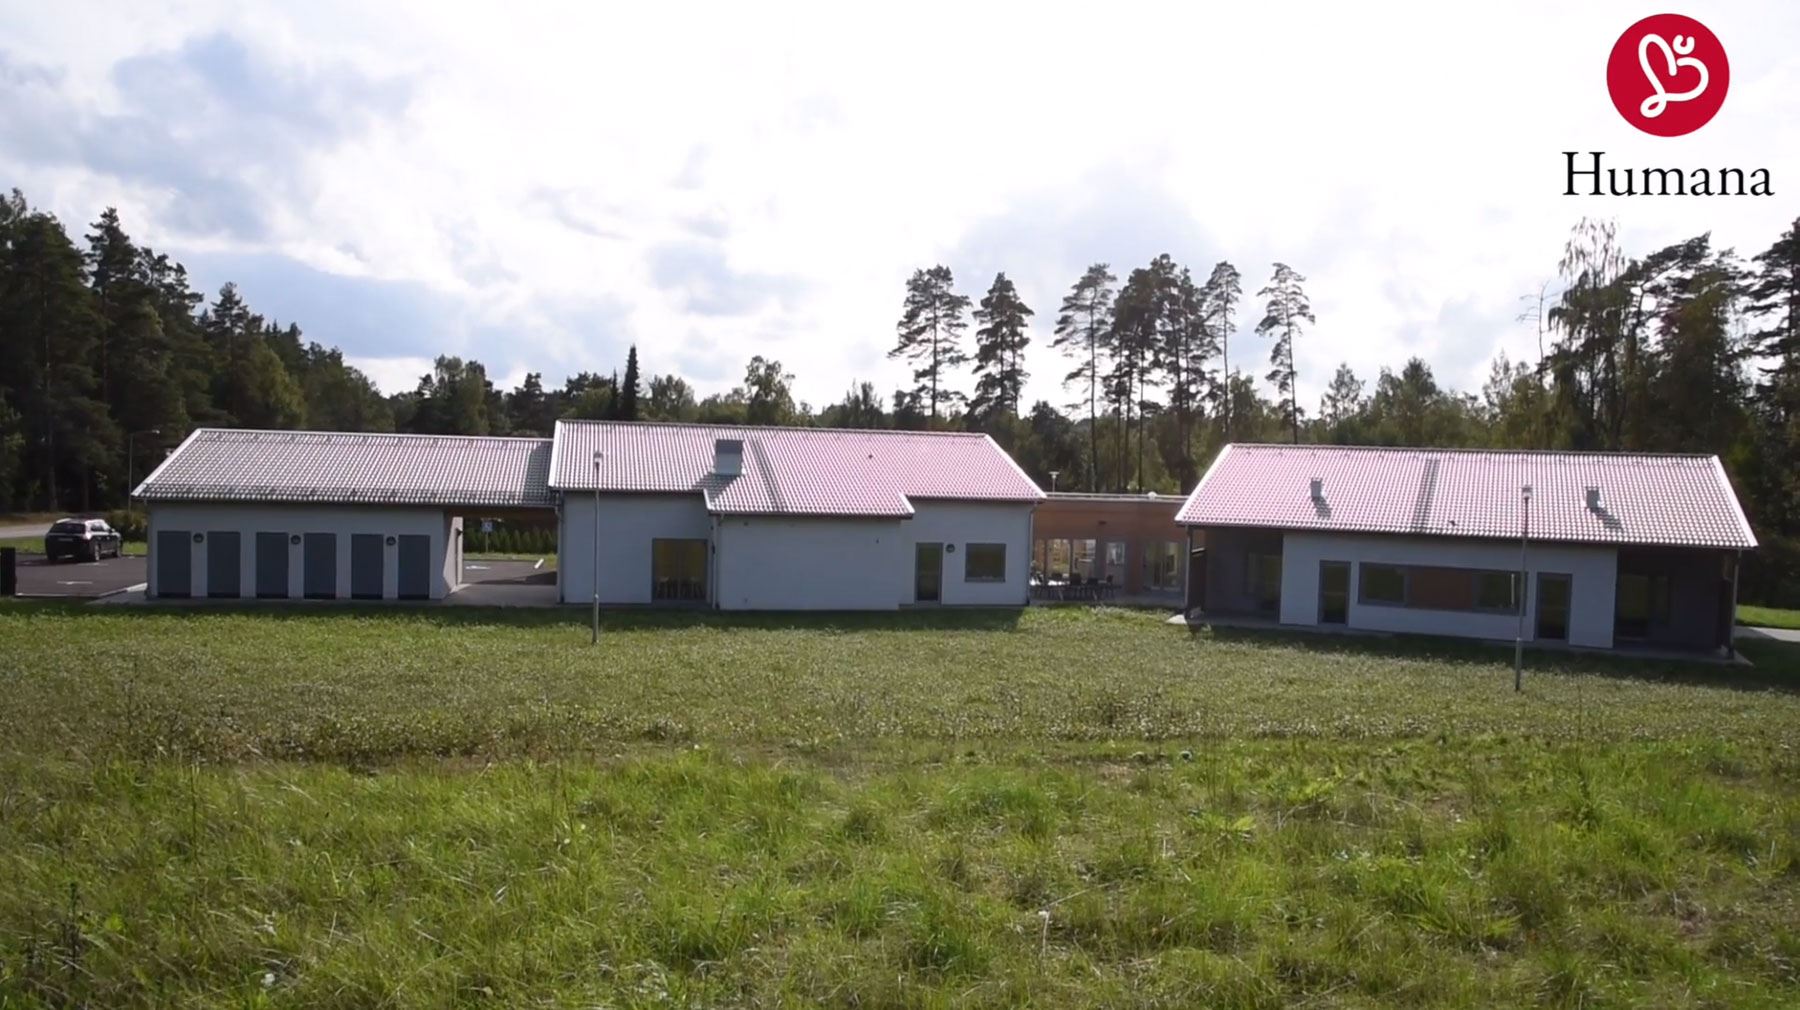 Ljungsjövägens LSS i Ljungby öppnade i augusti 2018 och här bor 6 unga vuxna som har känt varandra sen barnsben.